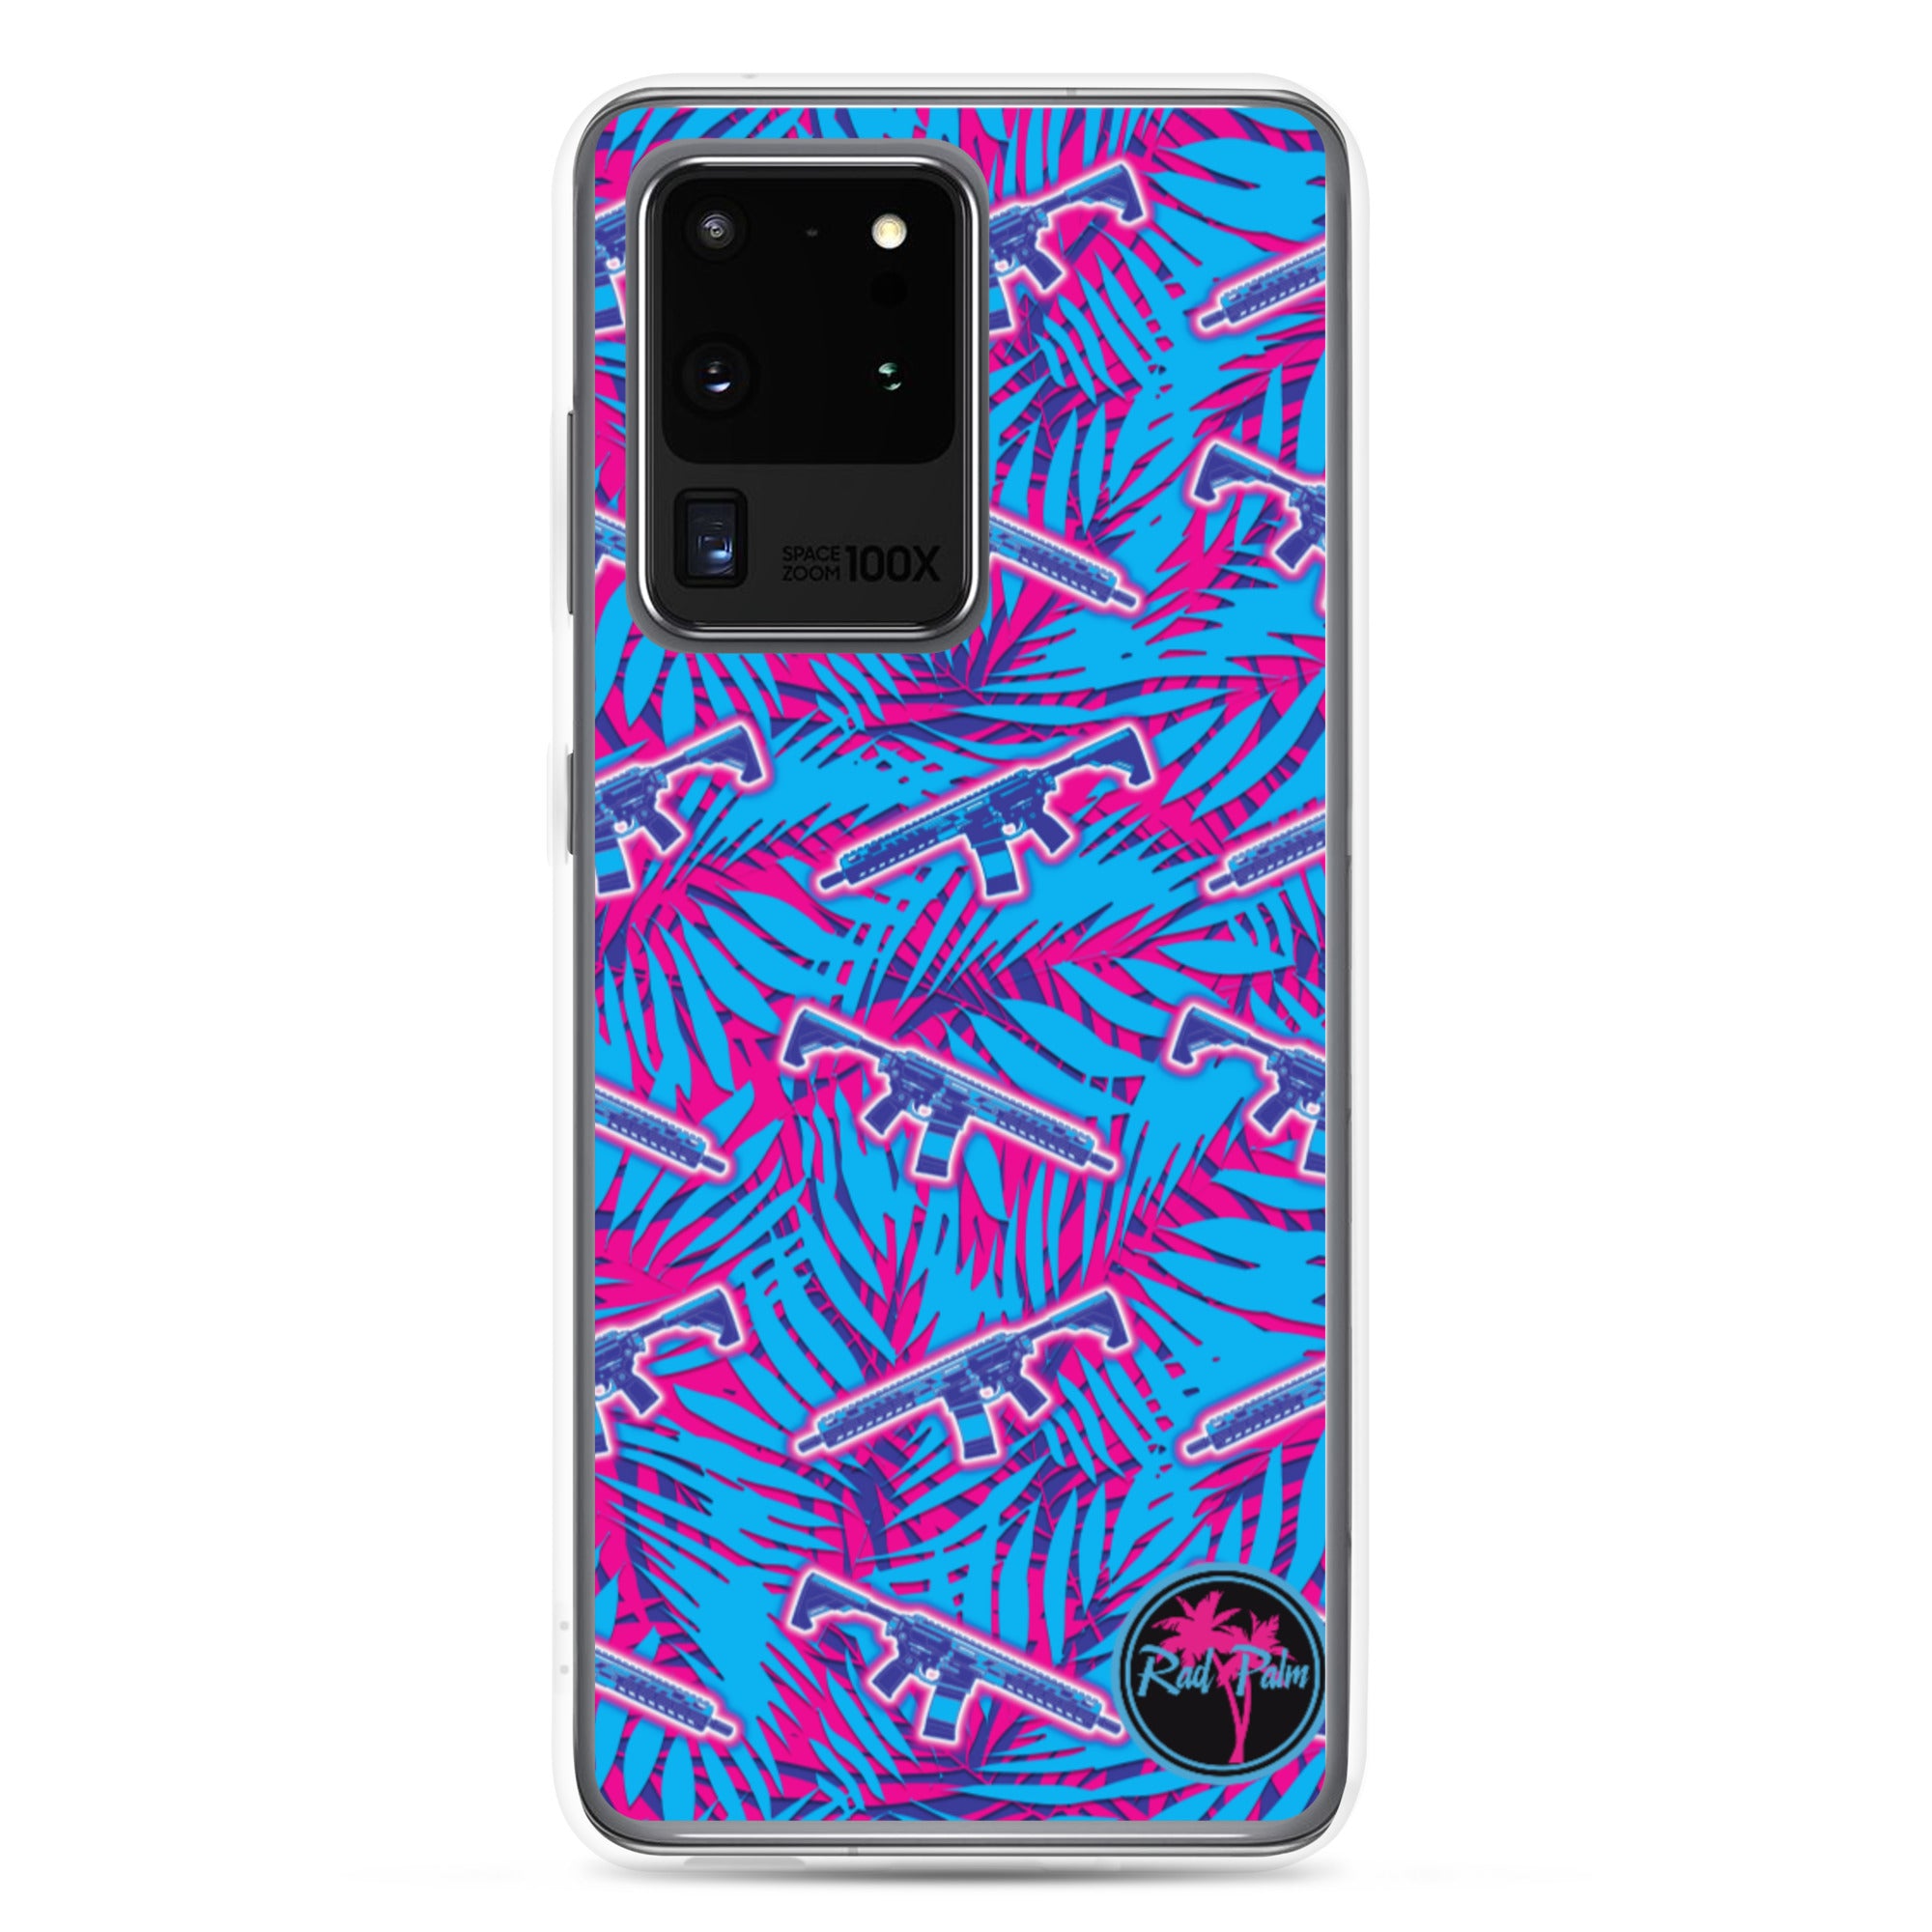 Neon ARs Samsung Case